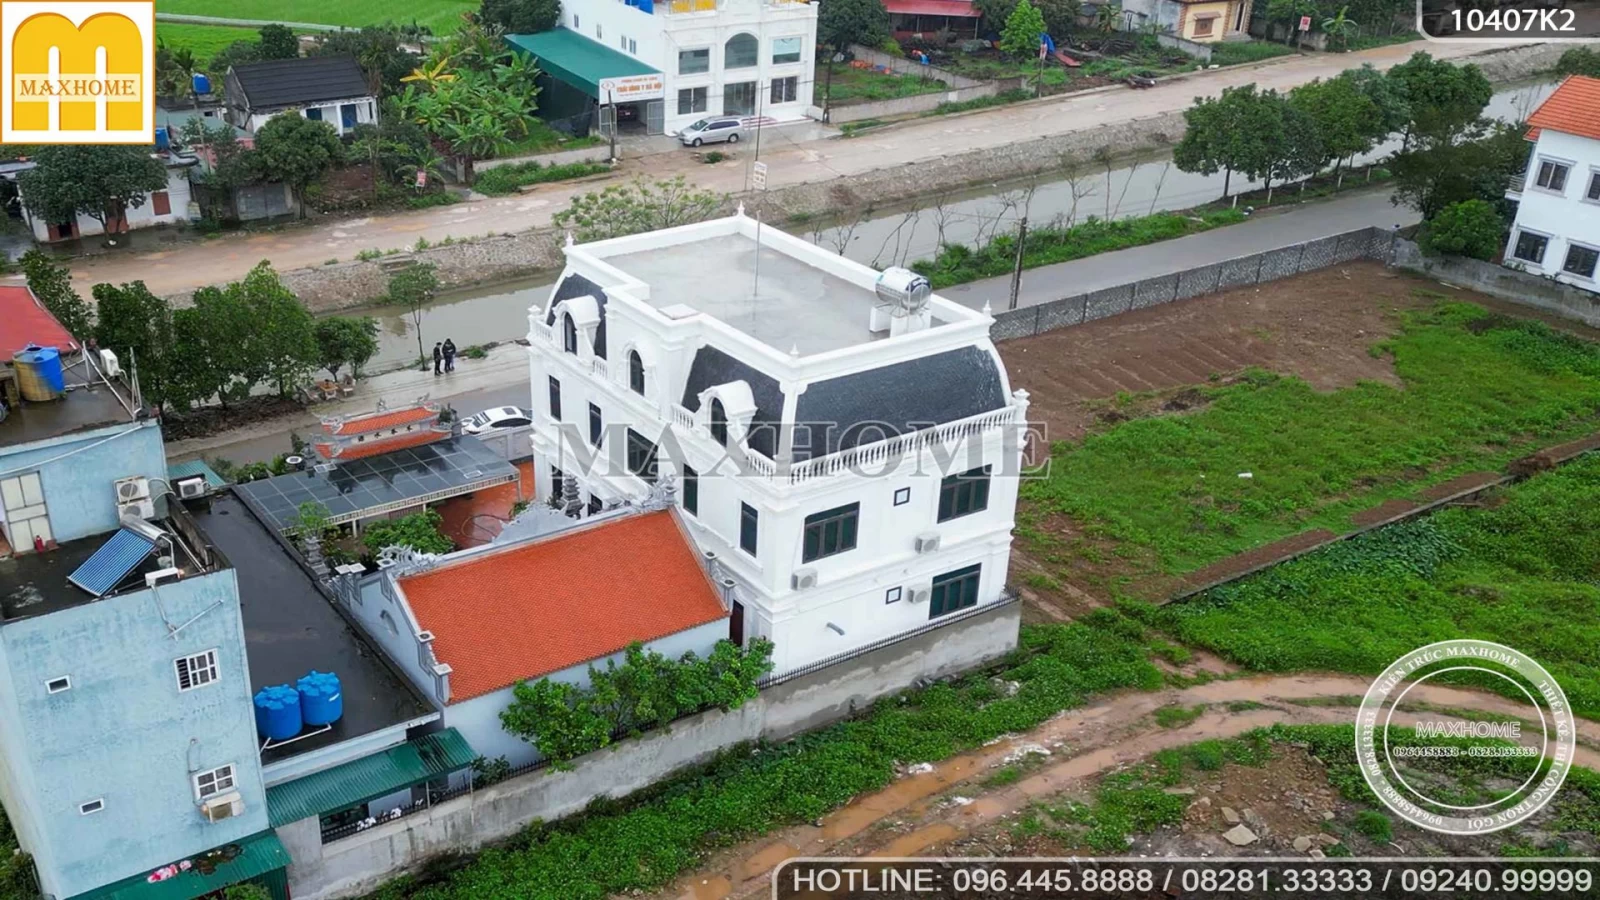 THỰC TẾ 4K Biệt thự tân cổ kết hợp nhà thờ QUÁ ĐỈNH Maxhome thi công trọn gói ở Thái Bình | MH02550